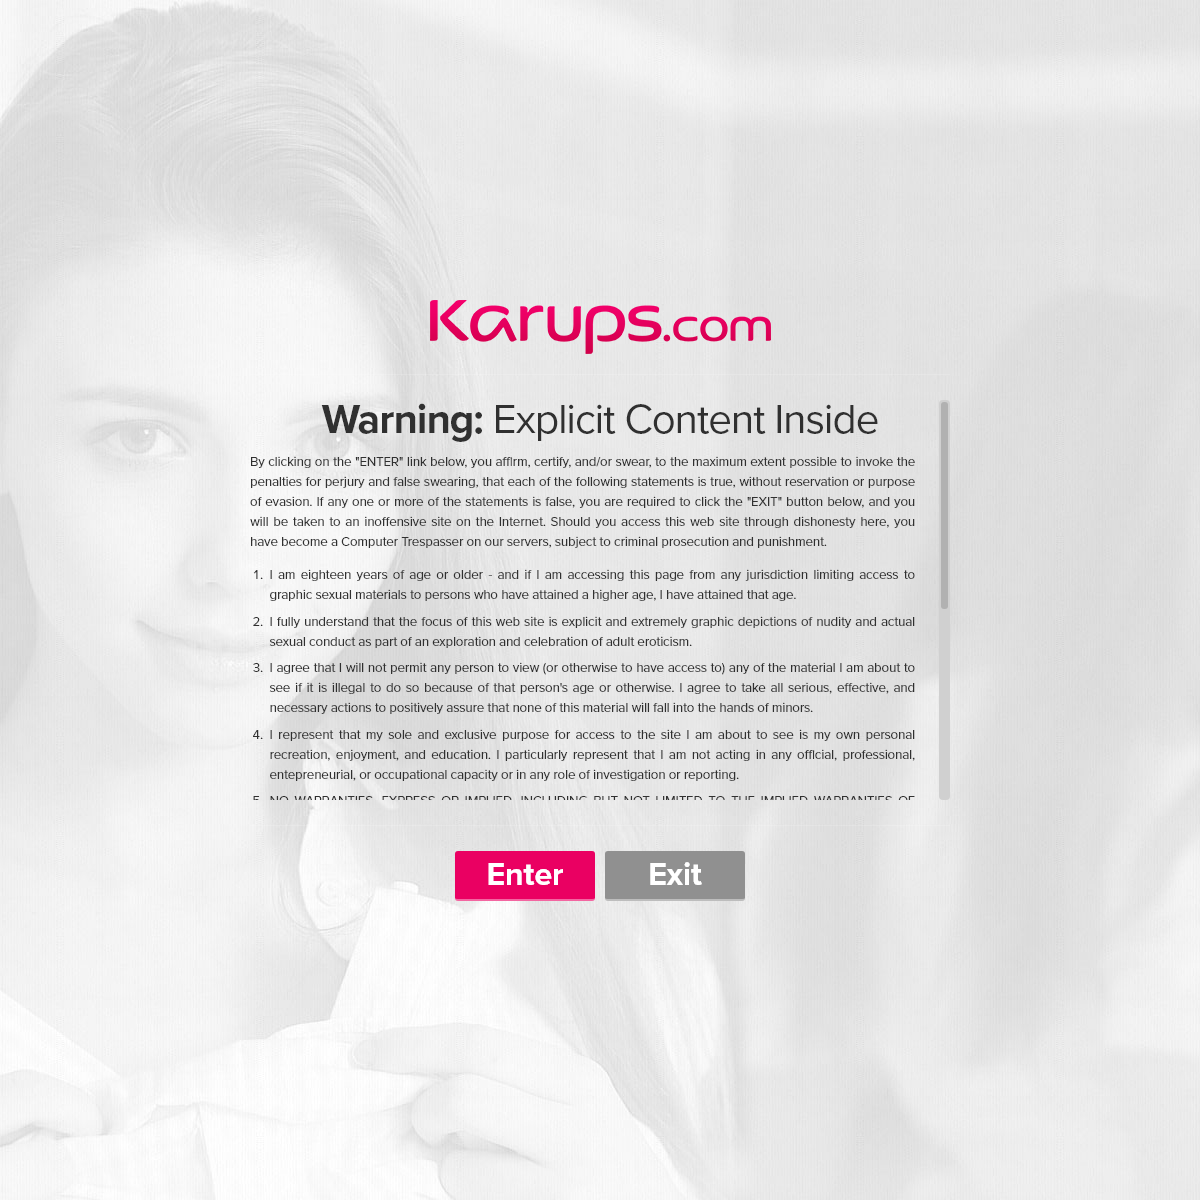 A complete backup of karups.com